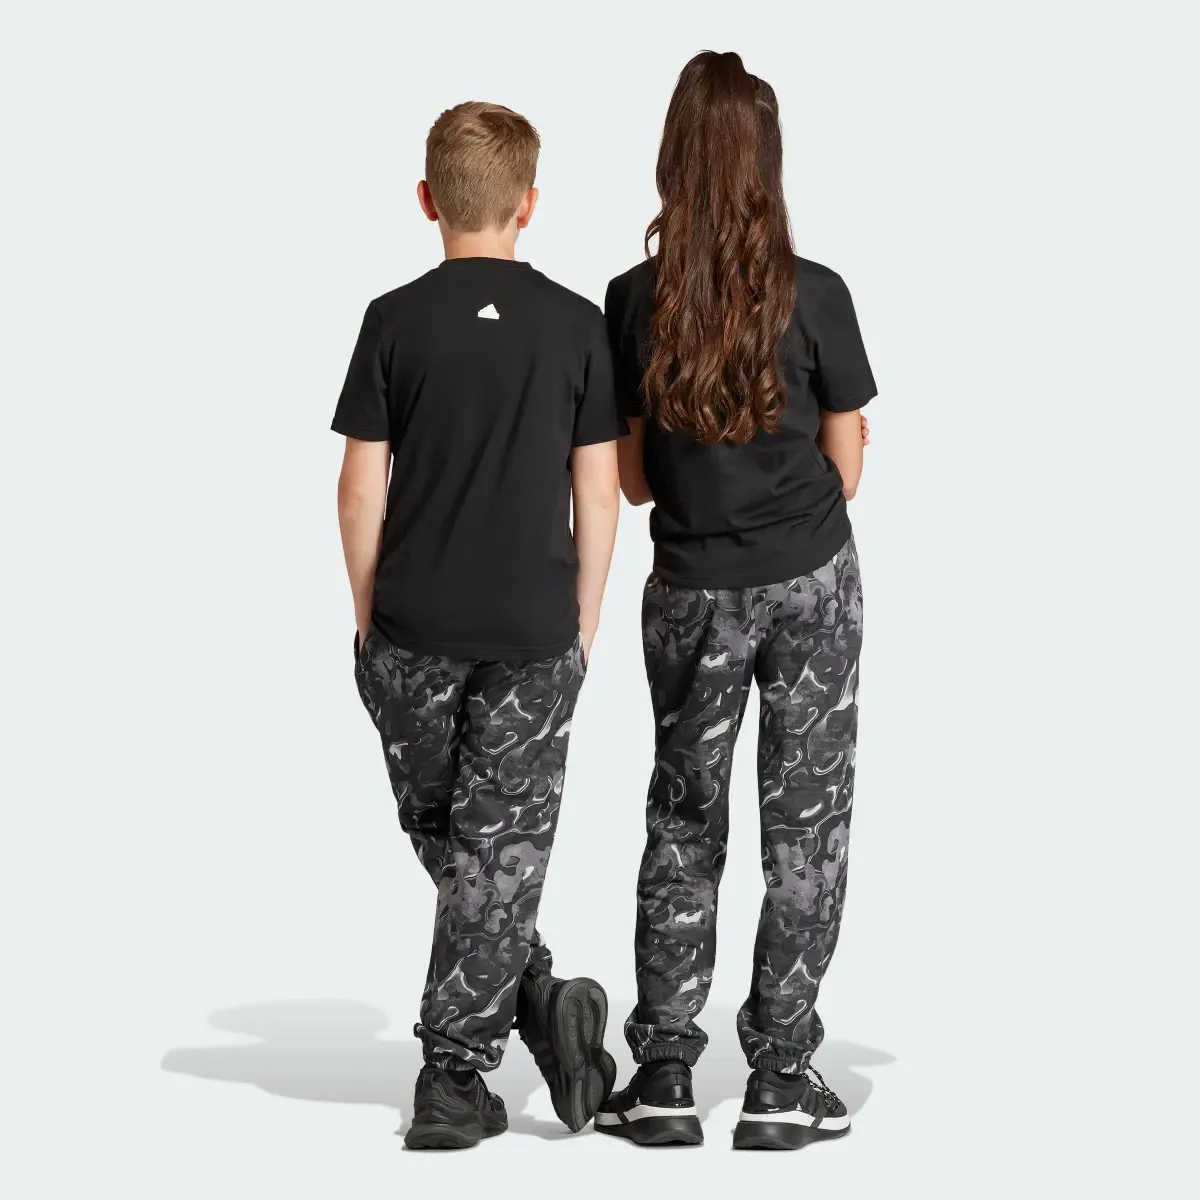 Adidas Spodnie Future Icons Allover Print Kids. 2